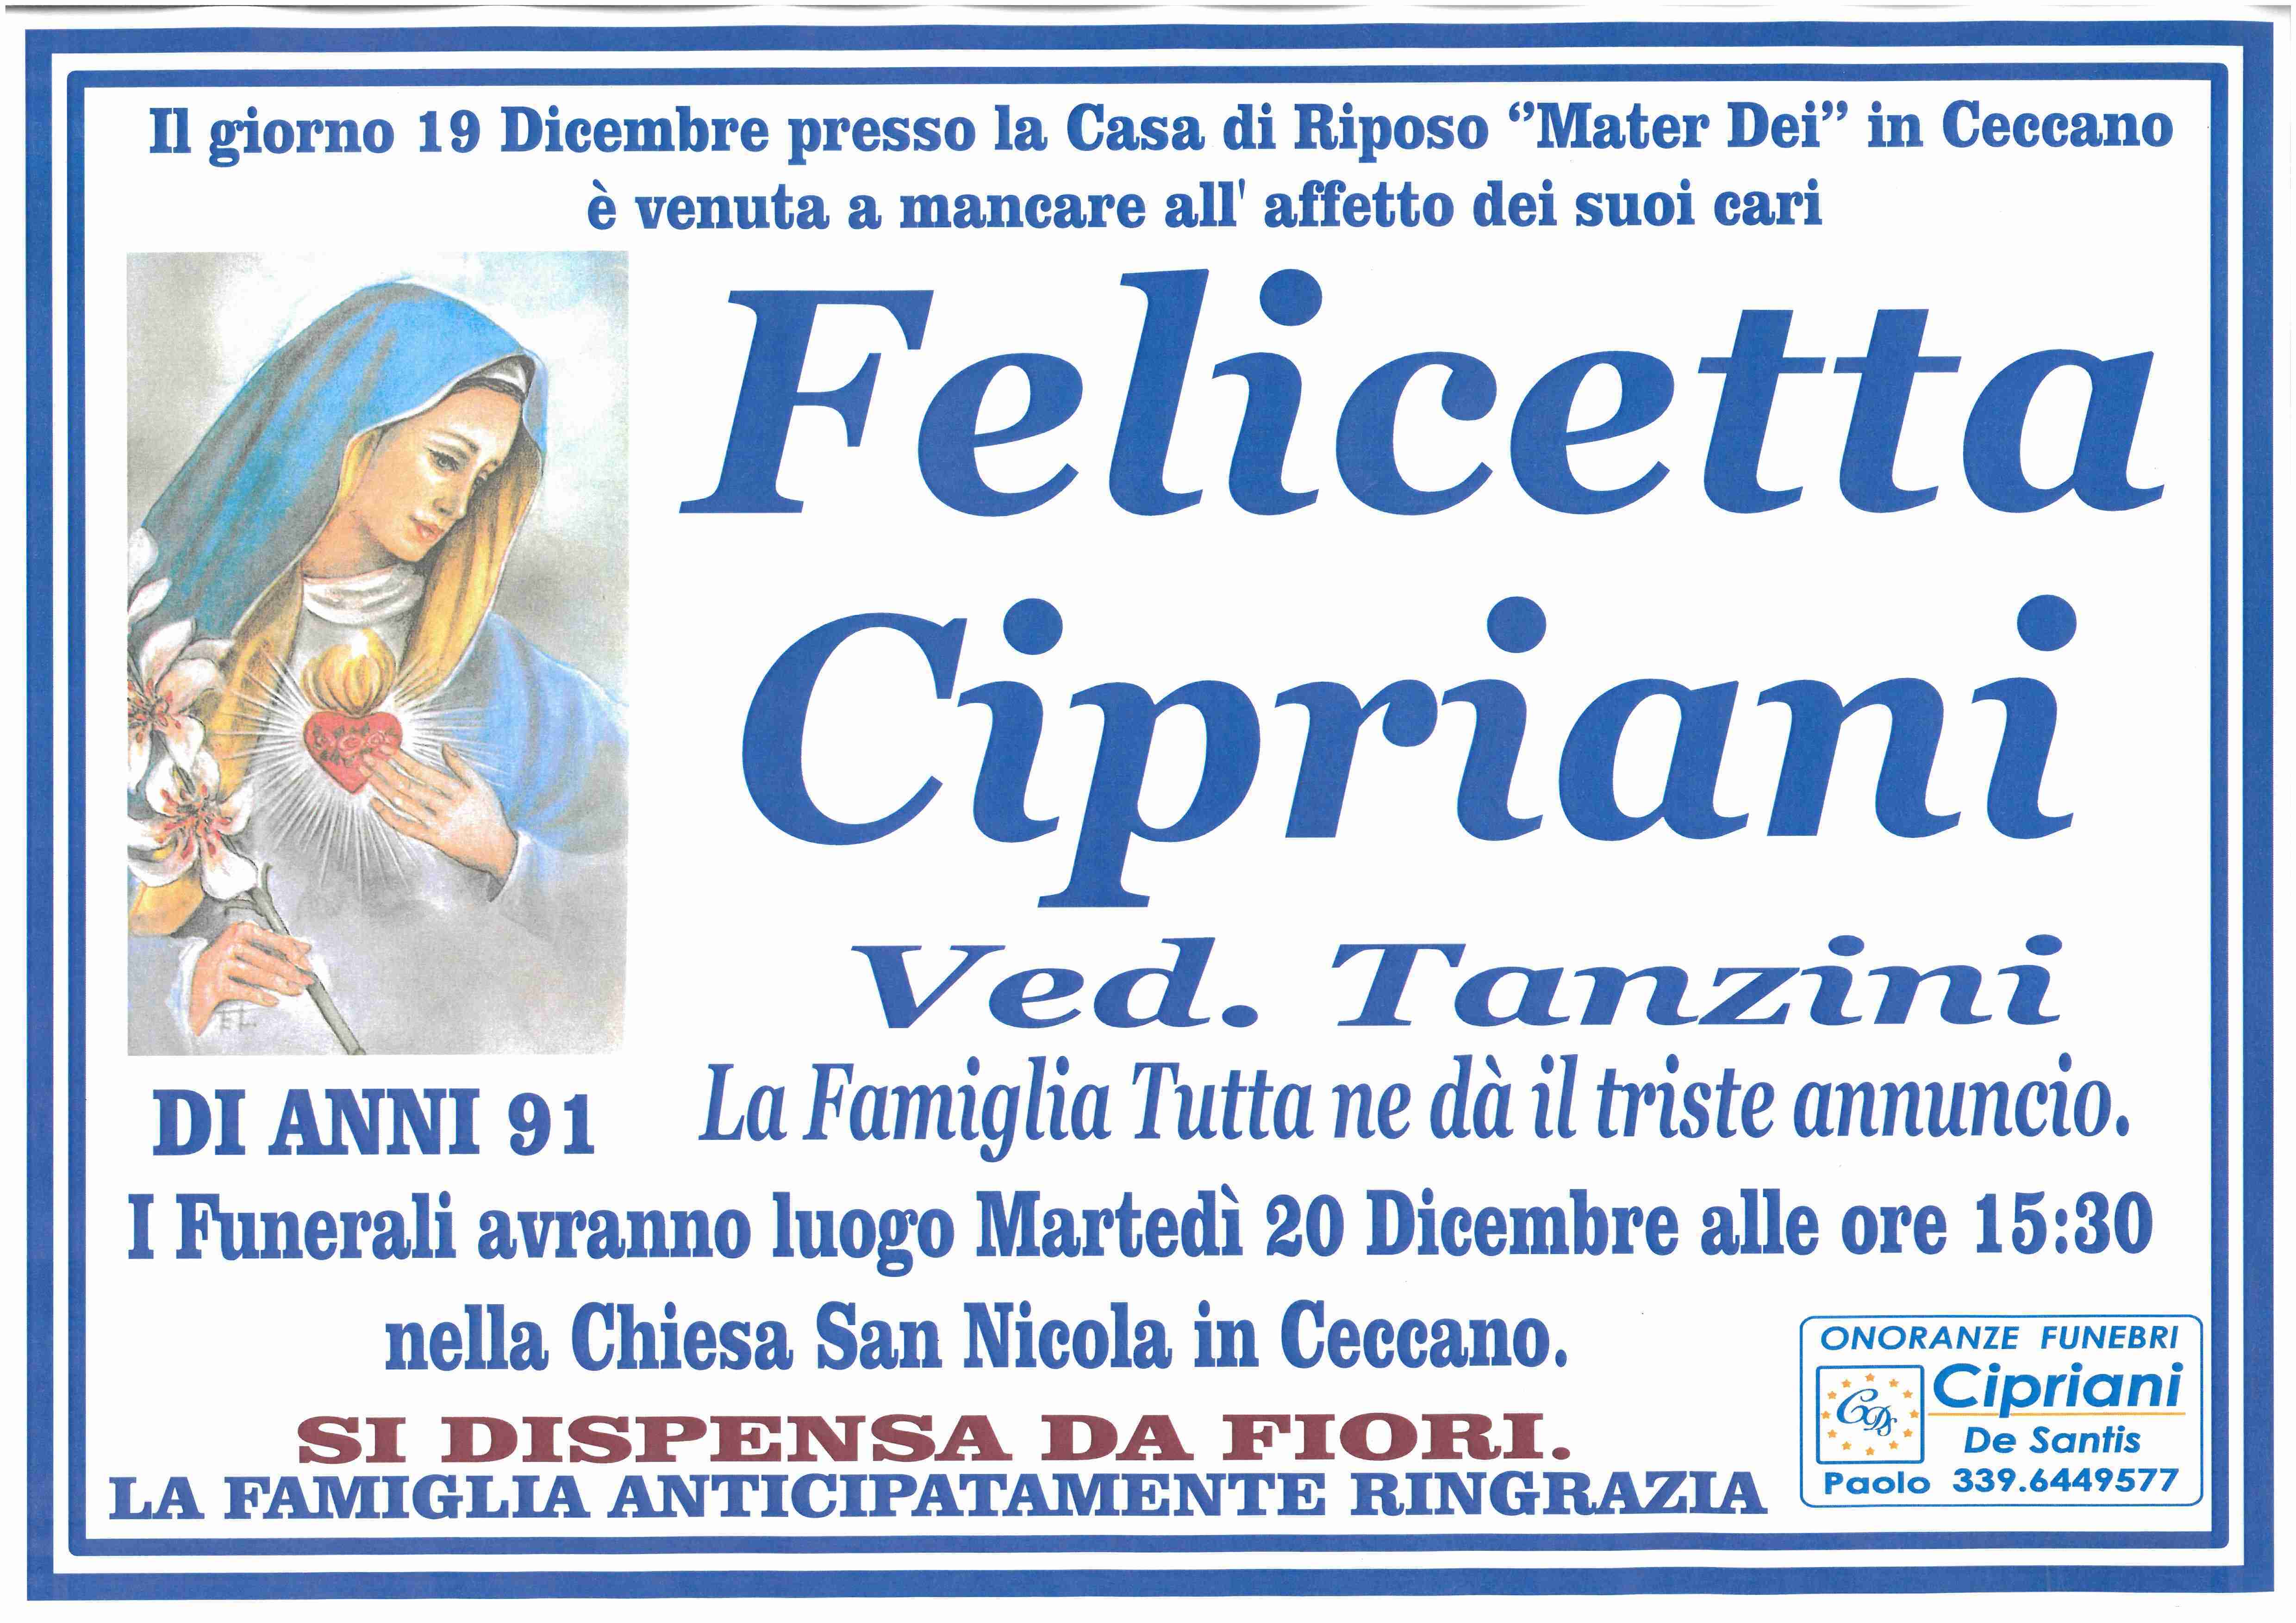 Felicetta Cipriani